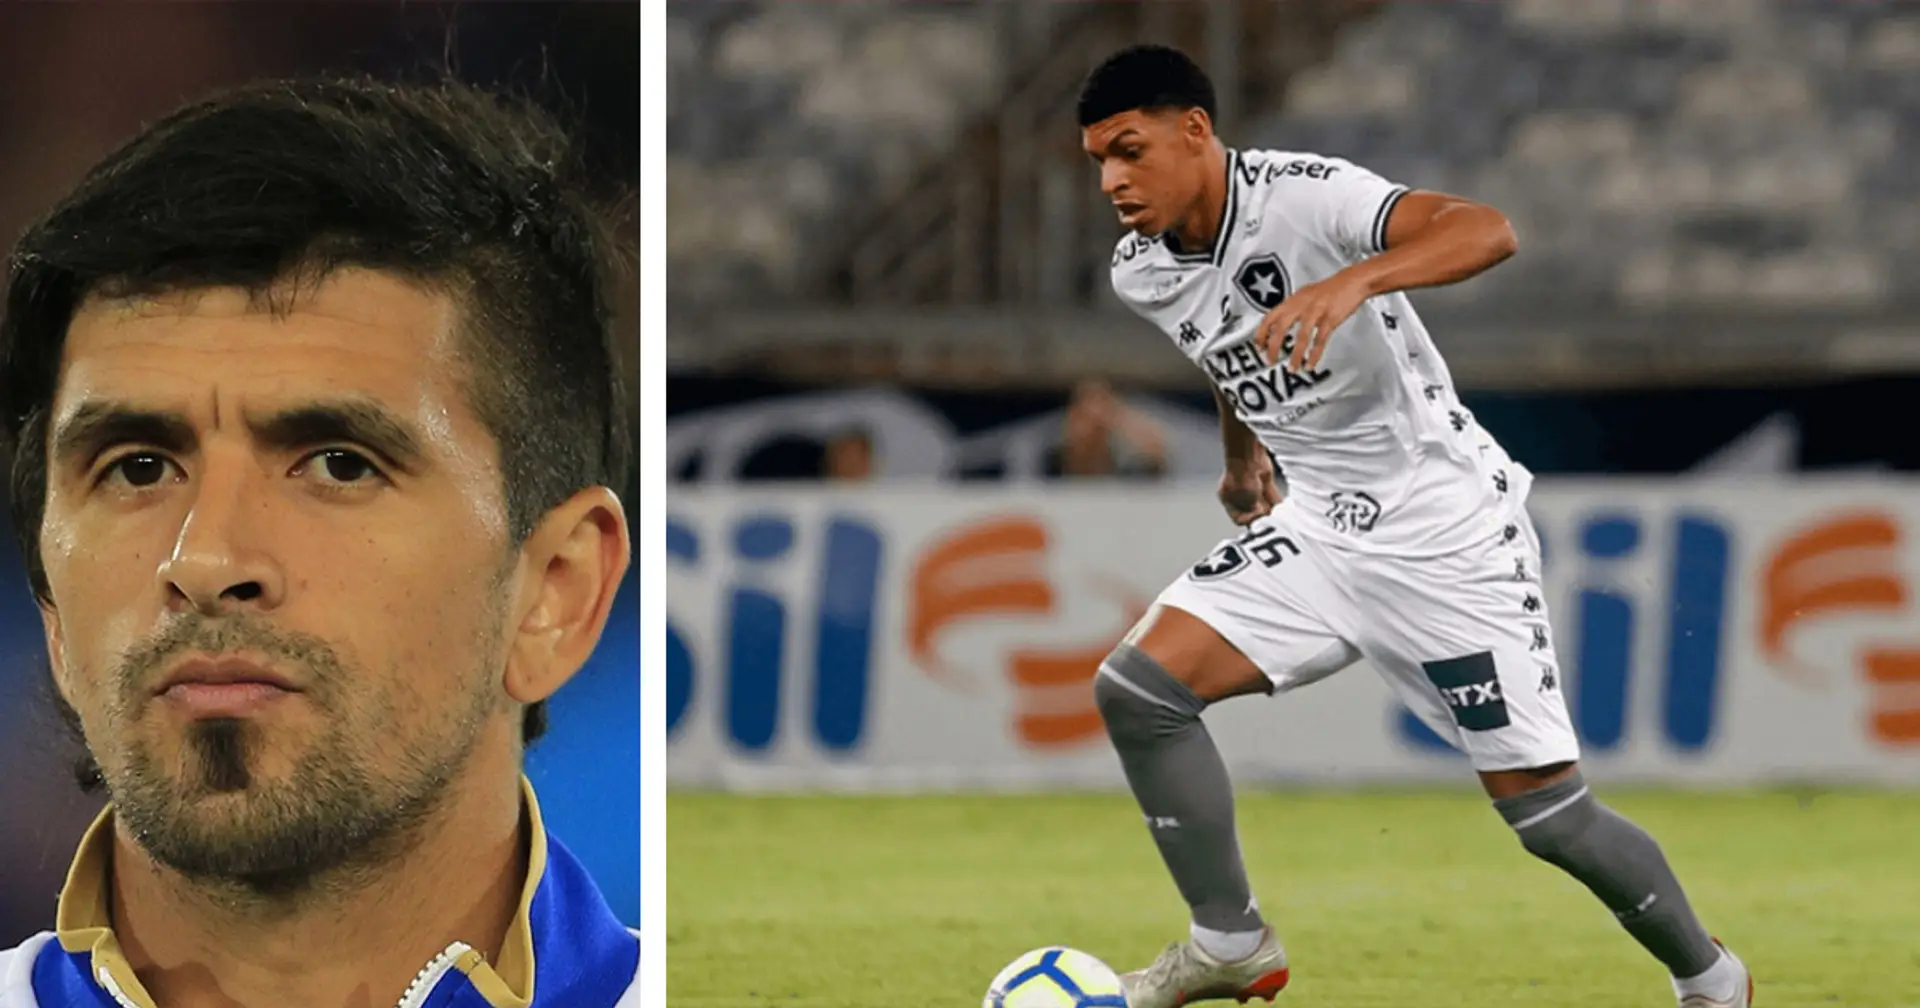 "C'est un attaquant très rapide et costaud": Lucho Gonzalez, ancien milieu de terrain de l'OM, approuve le transfert de Luis Henrique